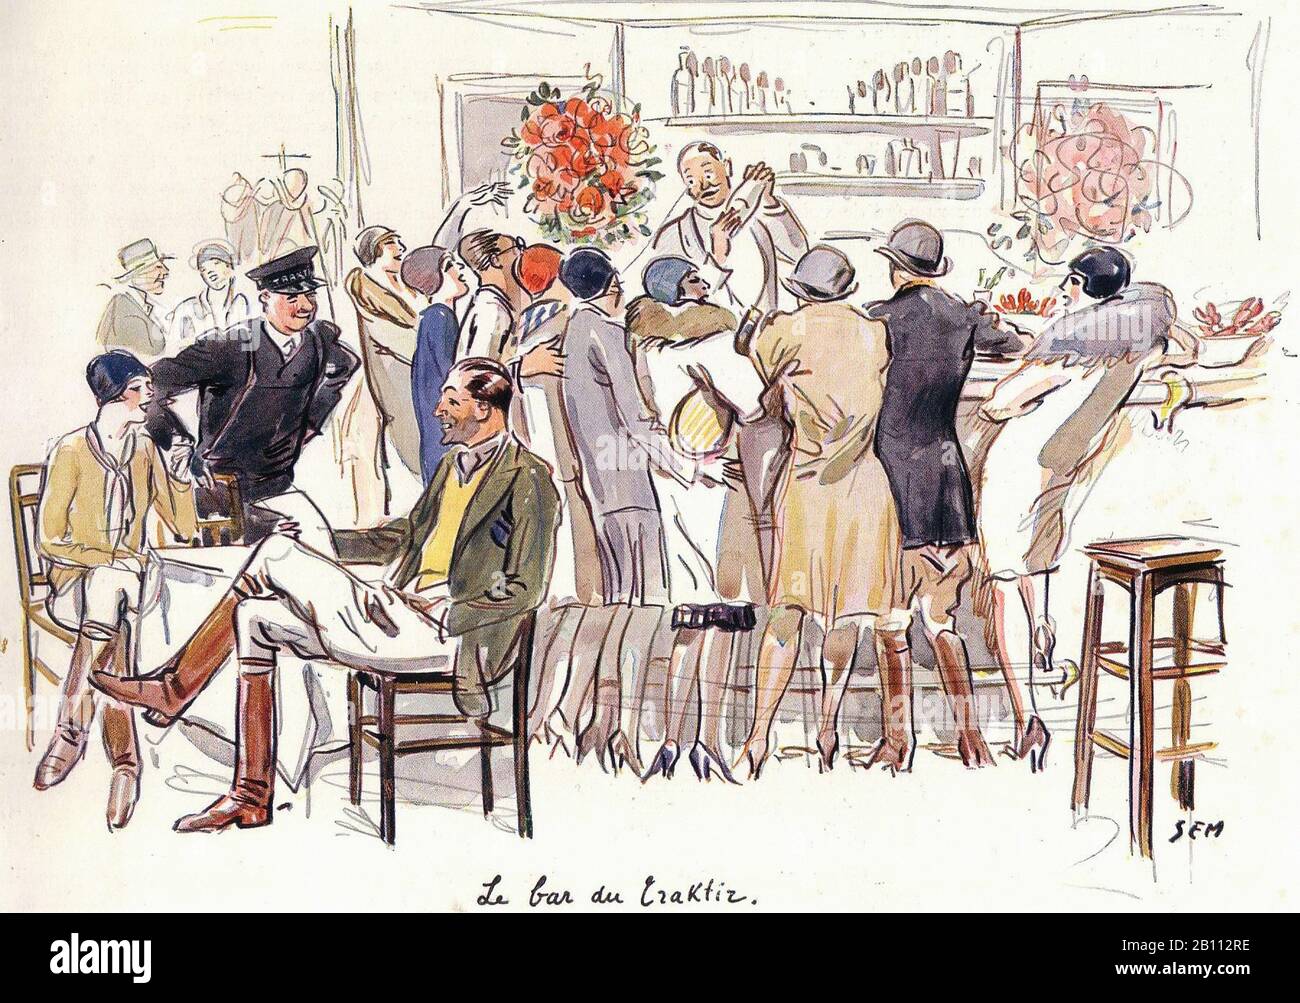 Le bar du Craktiz - Illustration von SEM (Georges Goursat von den Jahren zwischen den Jahren zwischen den Jahren zwischen den Jahren zwischen den Jahren zwischen den Jahren von und 1934) Stockfoto